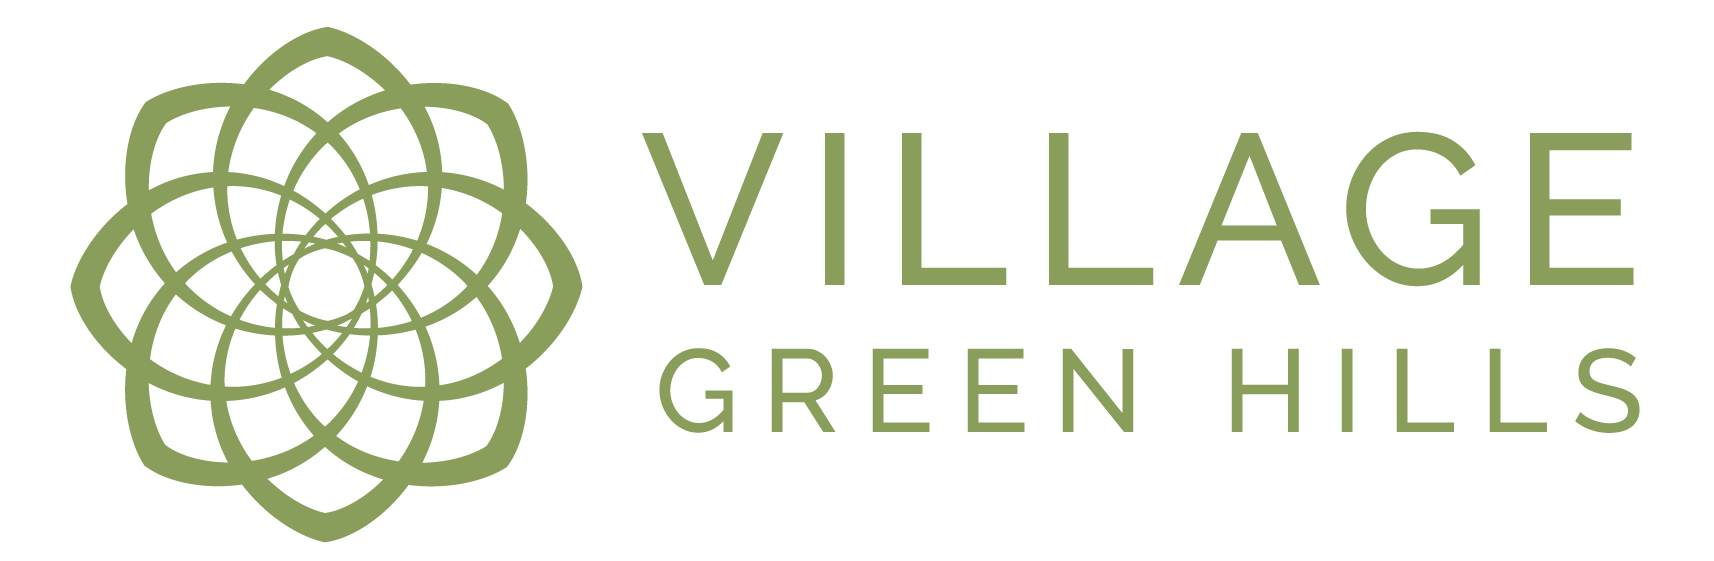 Village Green Hills Logo